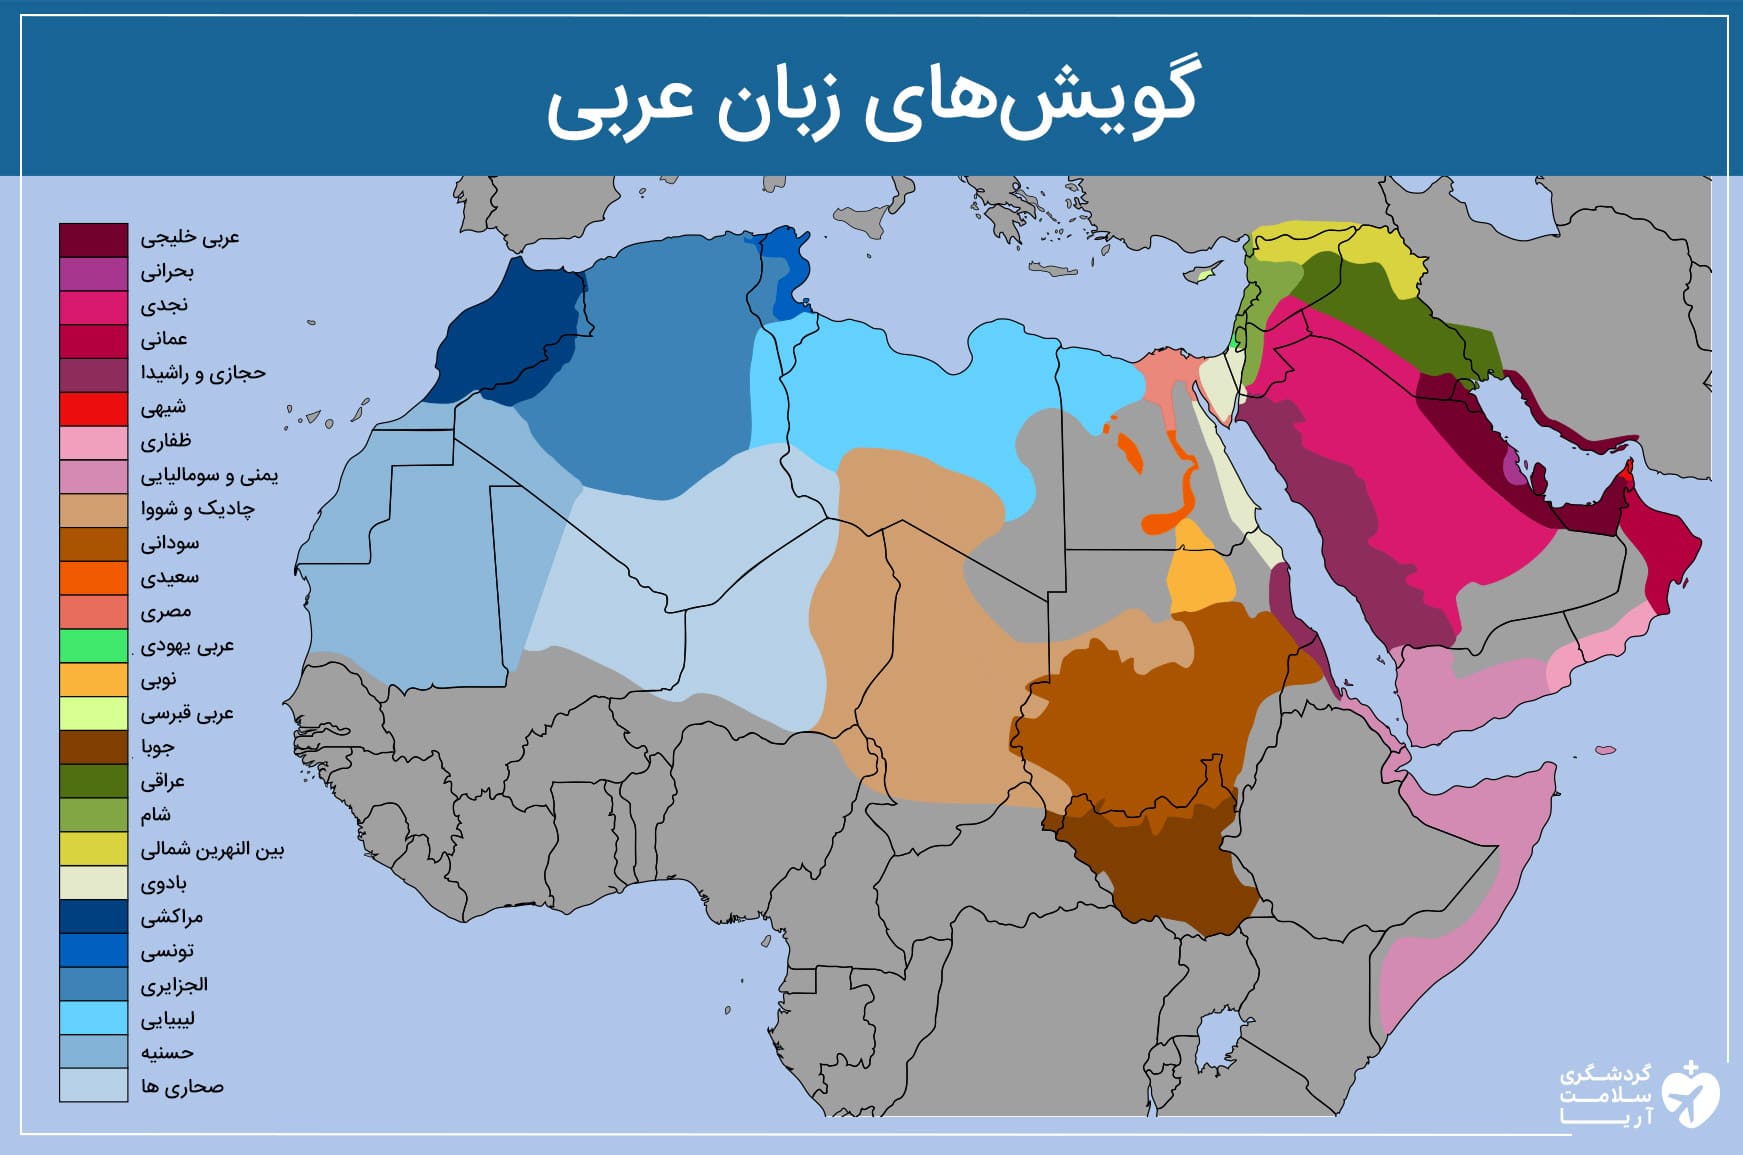 اینفوگرافی درمورد انواع مختلف گویش‌های زبان عربی در دنیا و نحوه پراکندگی آنها بر روی نقشه